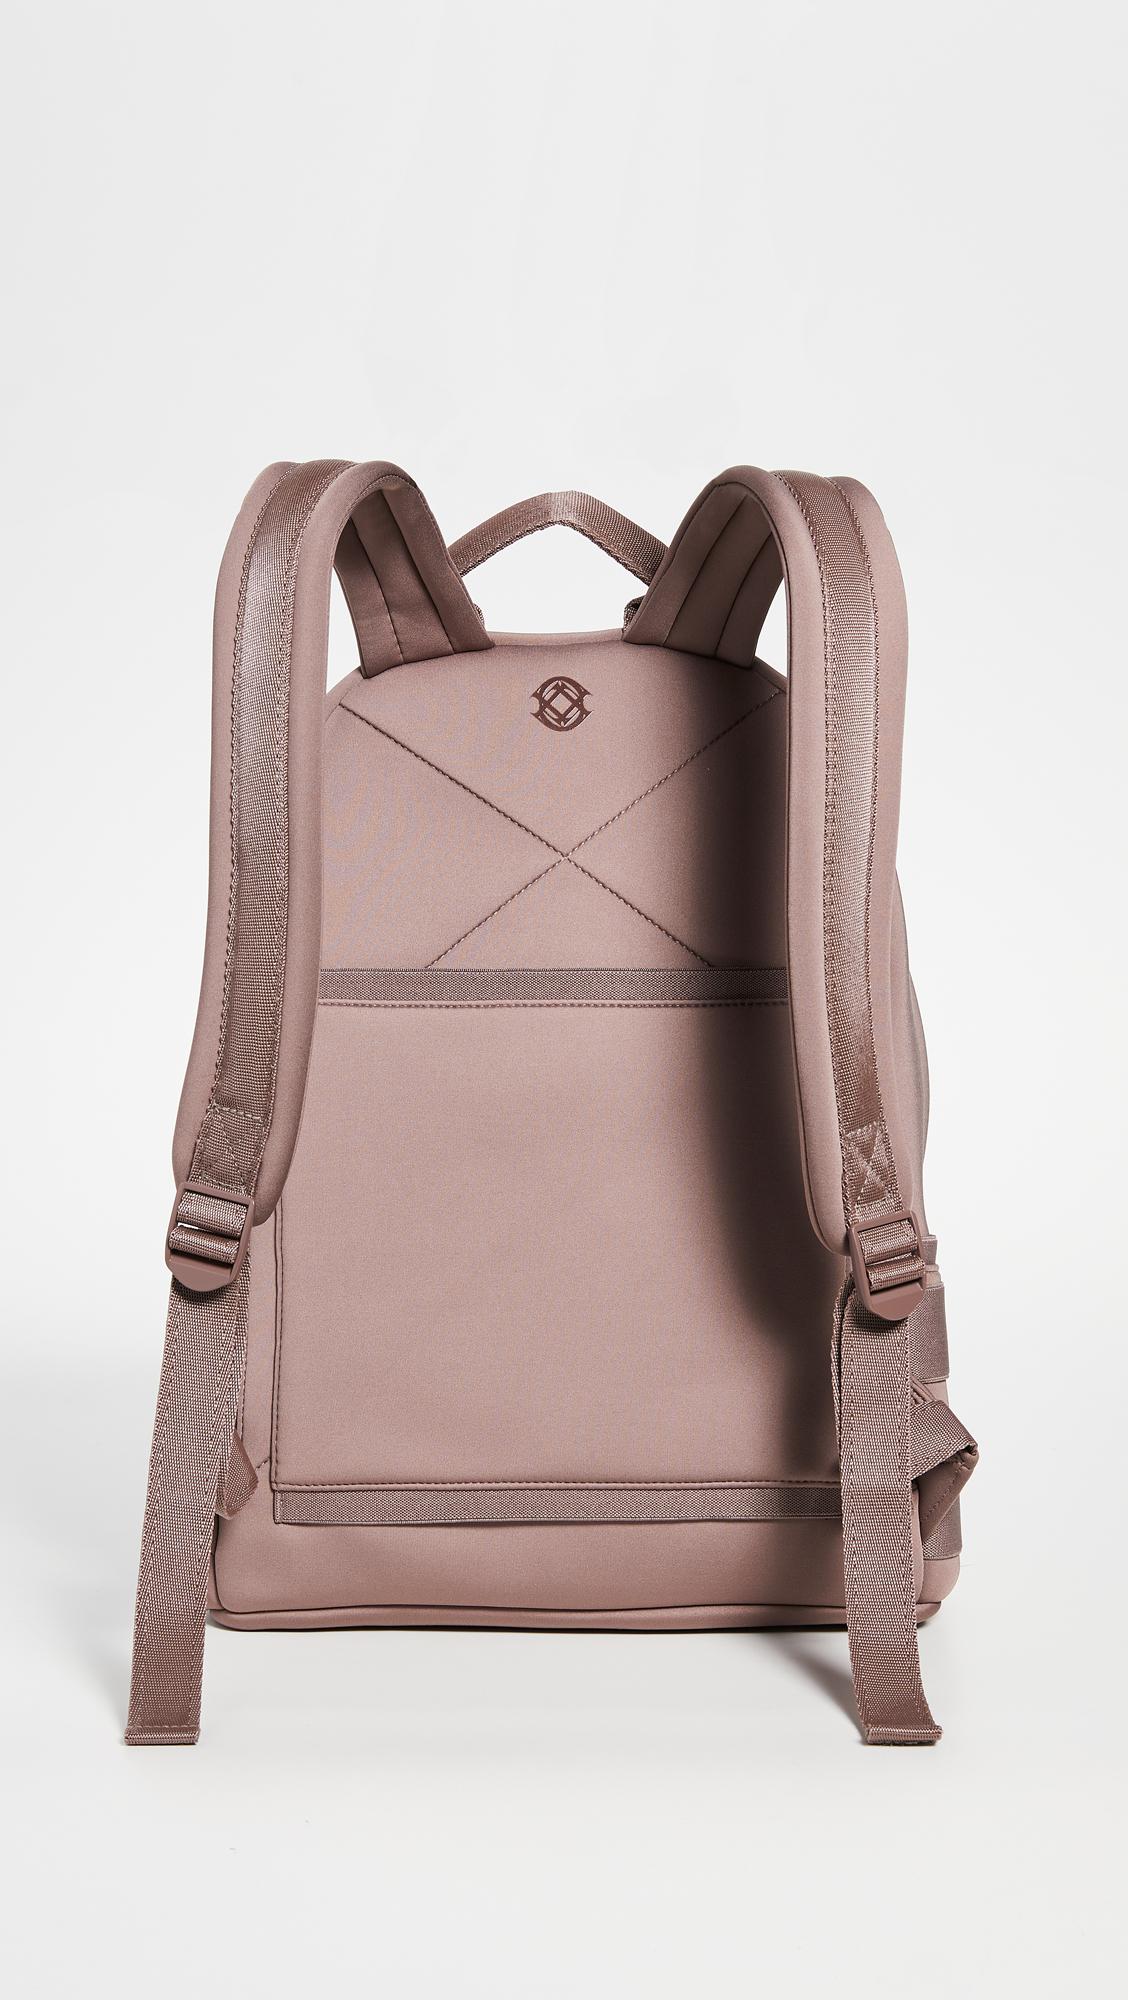 Dagne Dover Medium Dakota Backpack in Pink